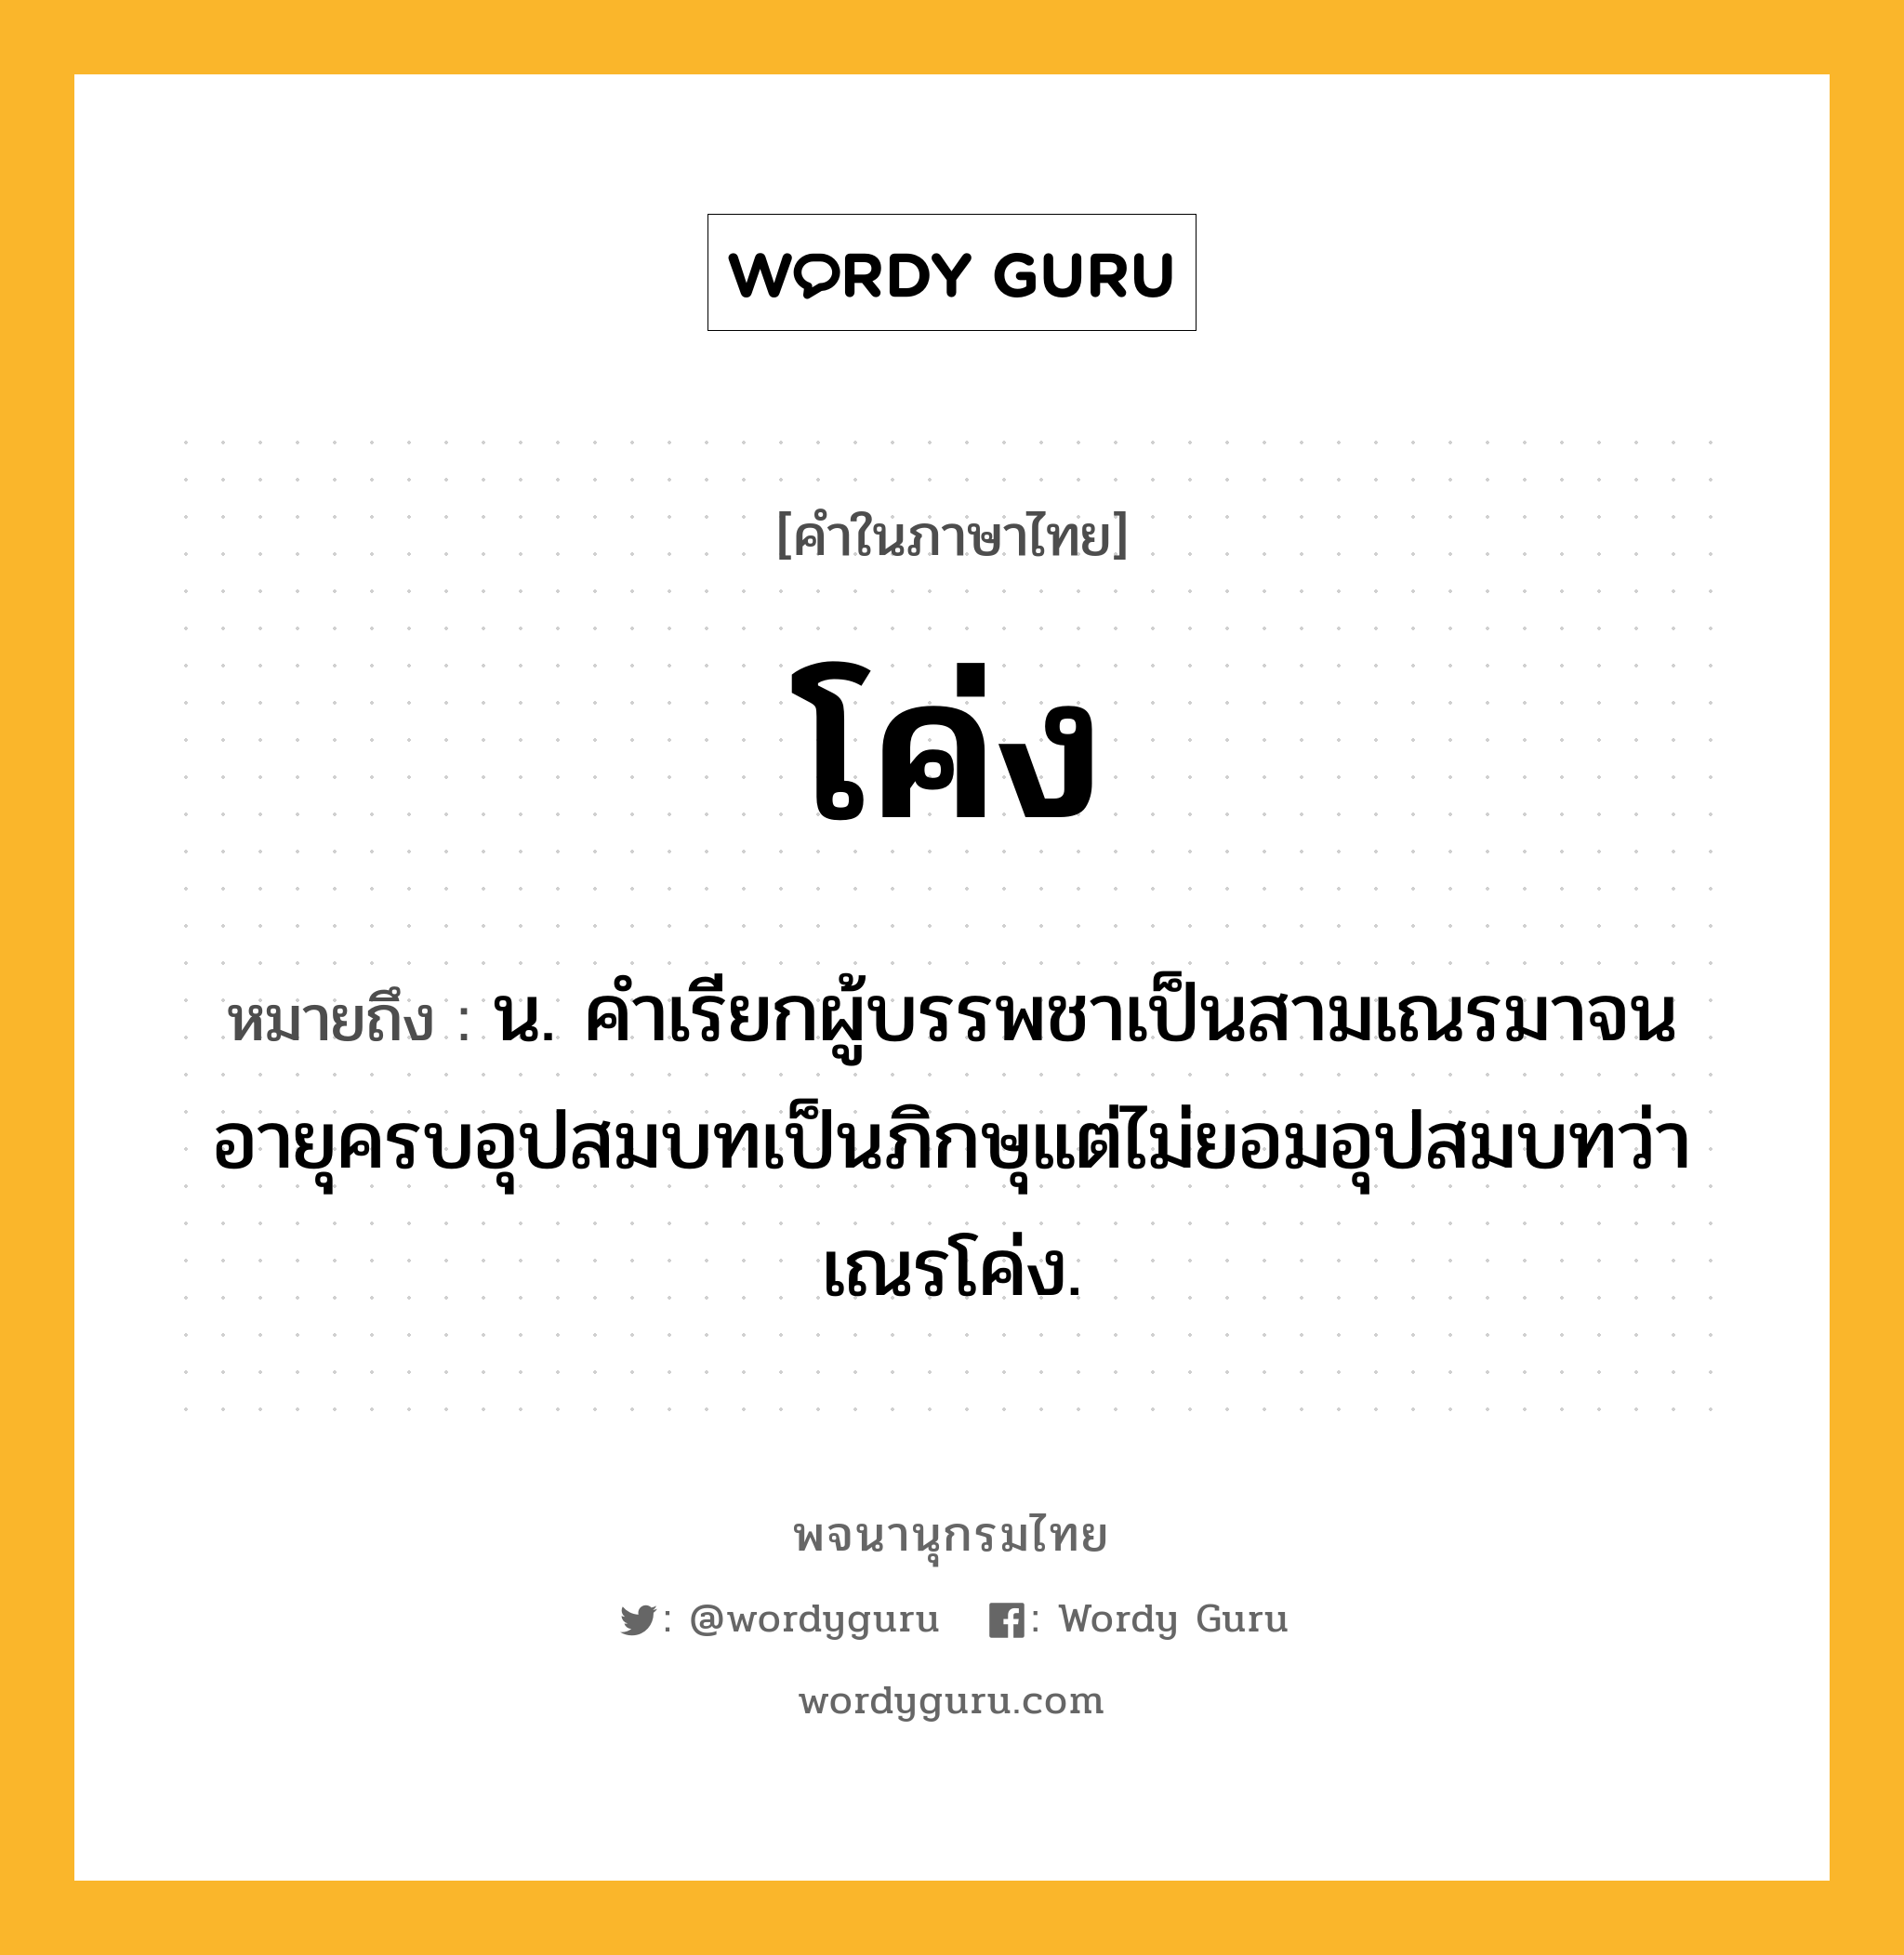 โค่ง ความหมาย หมายถึงอะไร?, คำในภาษาไทย โค่ง หมายถึง น. คําเรียกผู้บรรพชาเป็นสามเณรมาจนอายุครบอุปสมบทเป็นภิกษุแต่ไม่ยอมอุปสมบทว่า เณรโค่ง.